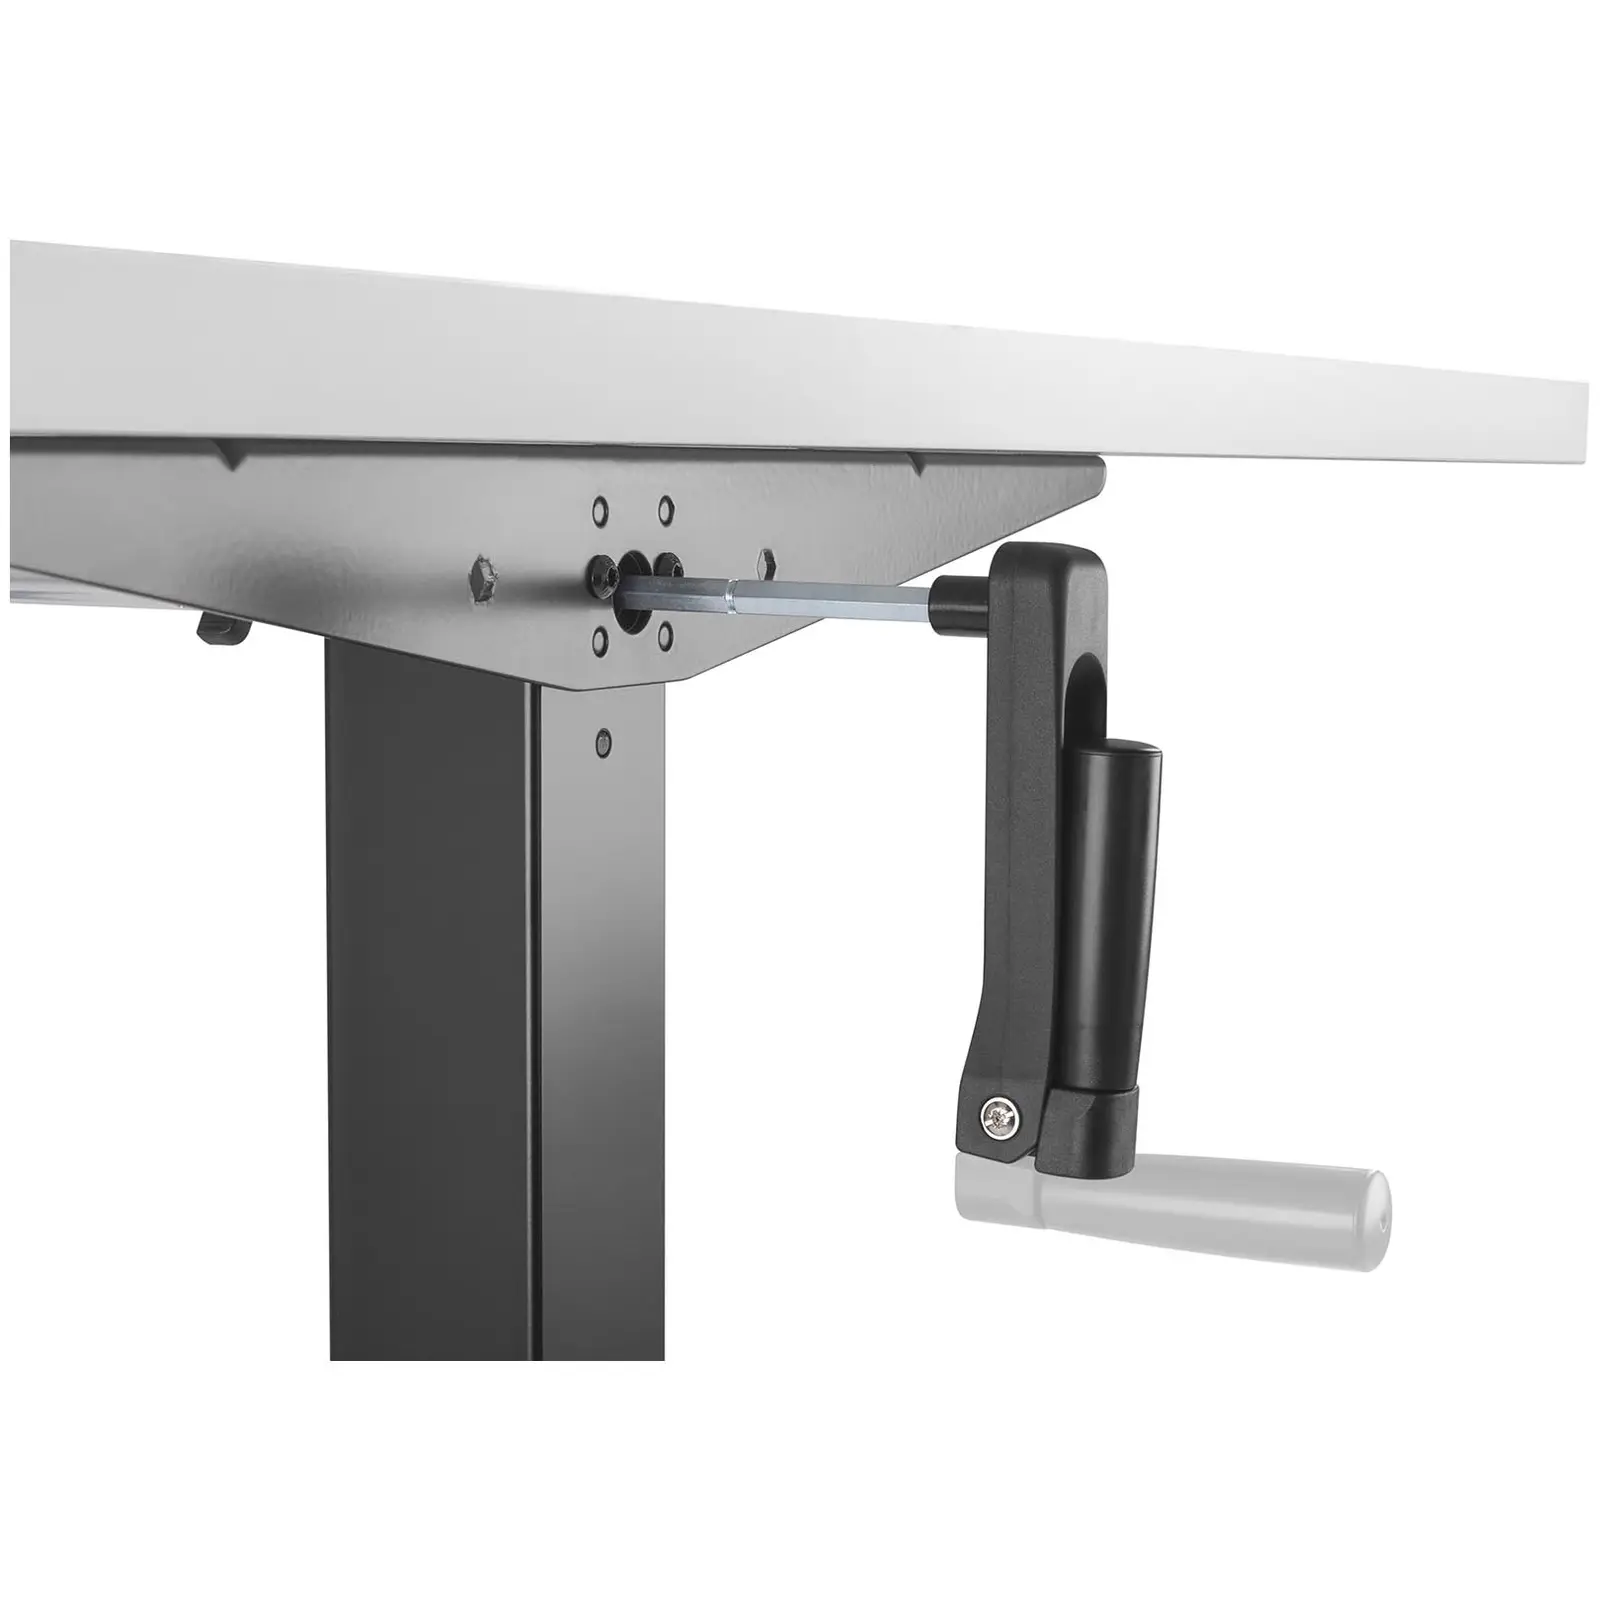 Höhenverstellbares Schreibtischgestell STAR_DESK_25 - manuell - 70 kg - schwarz